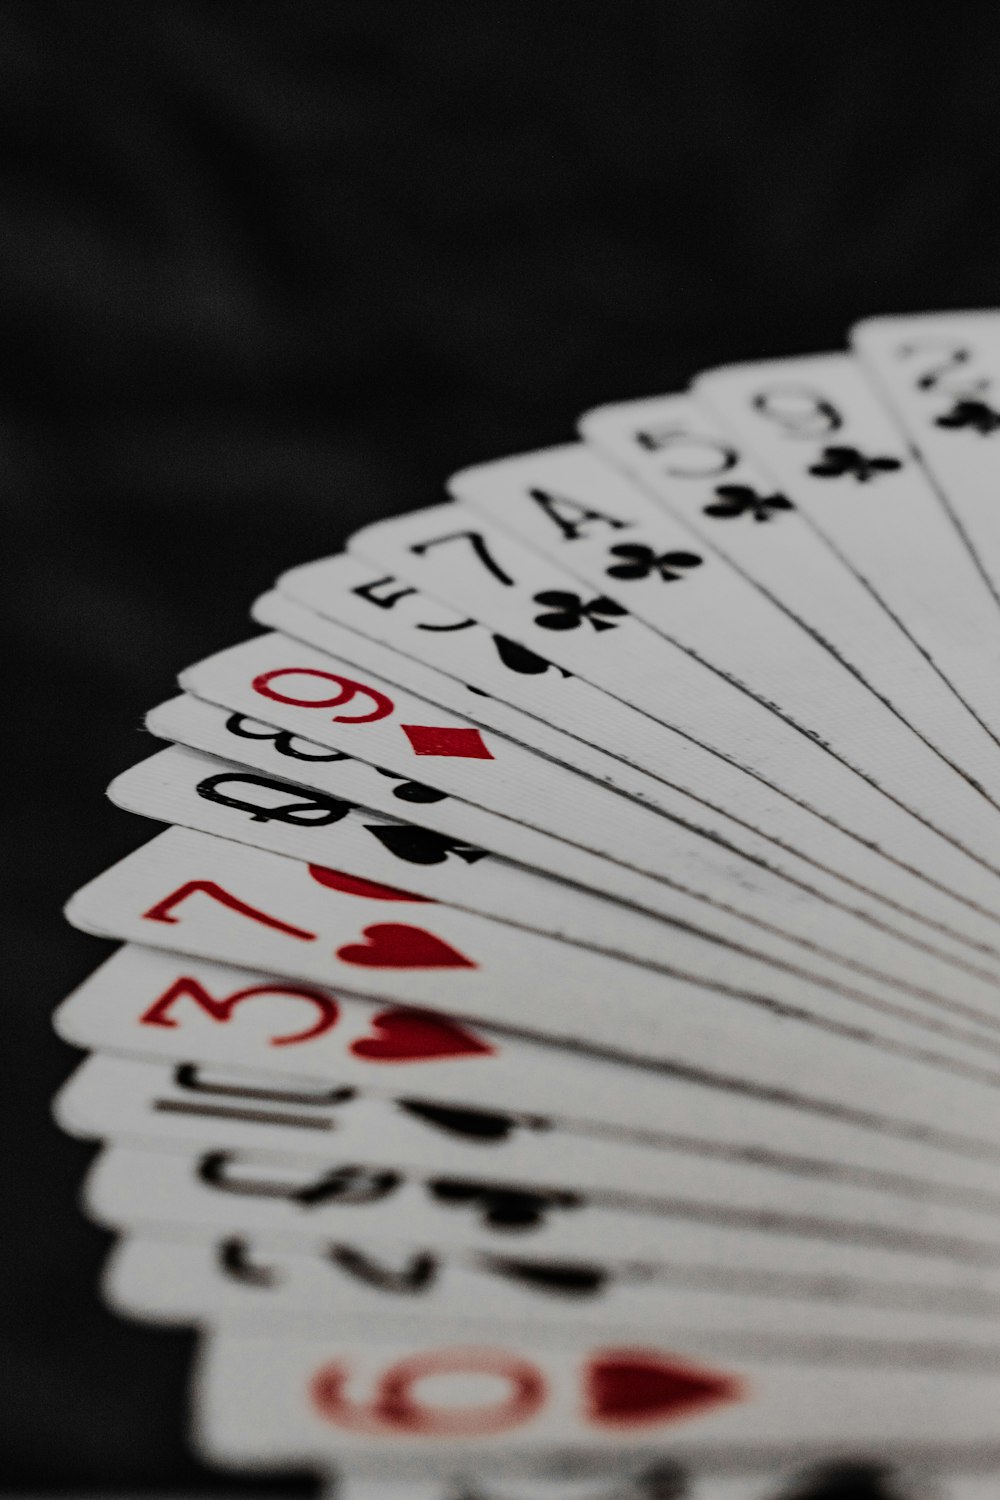 um close up de uma carta de baralho em uma mesa